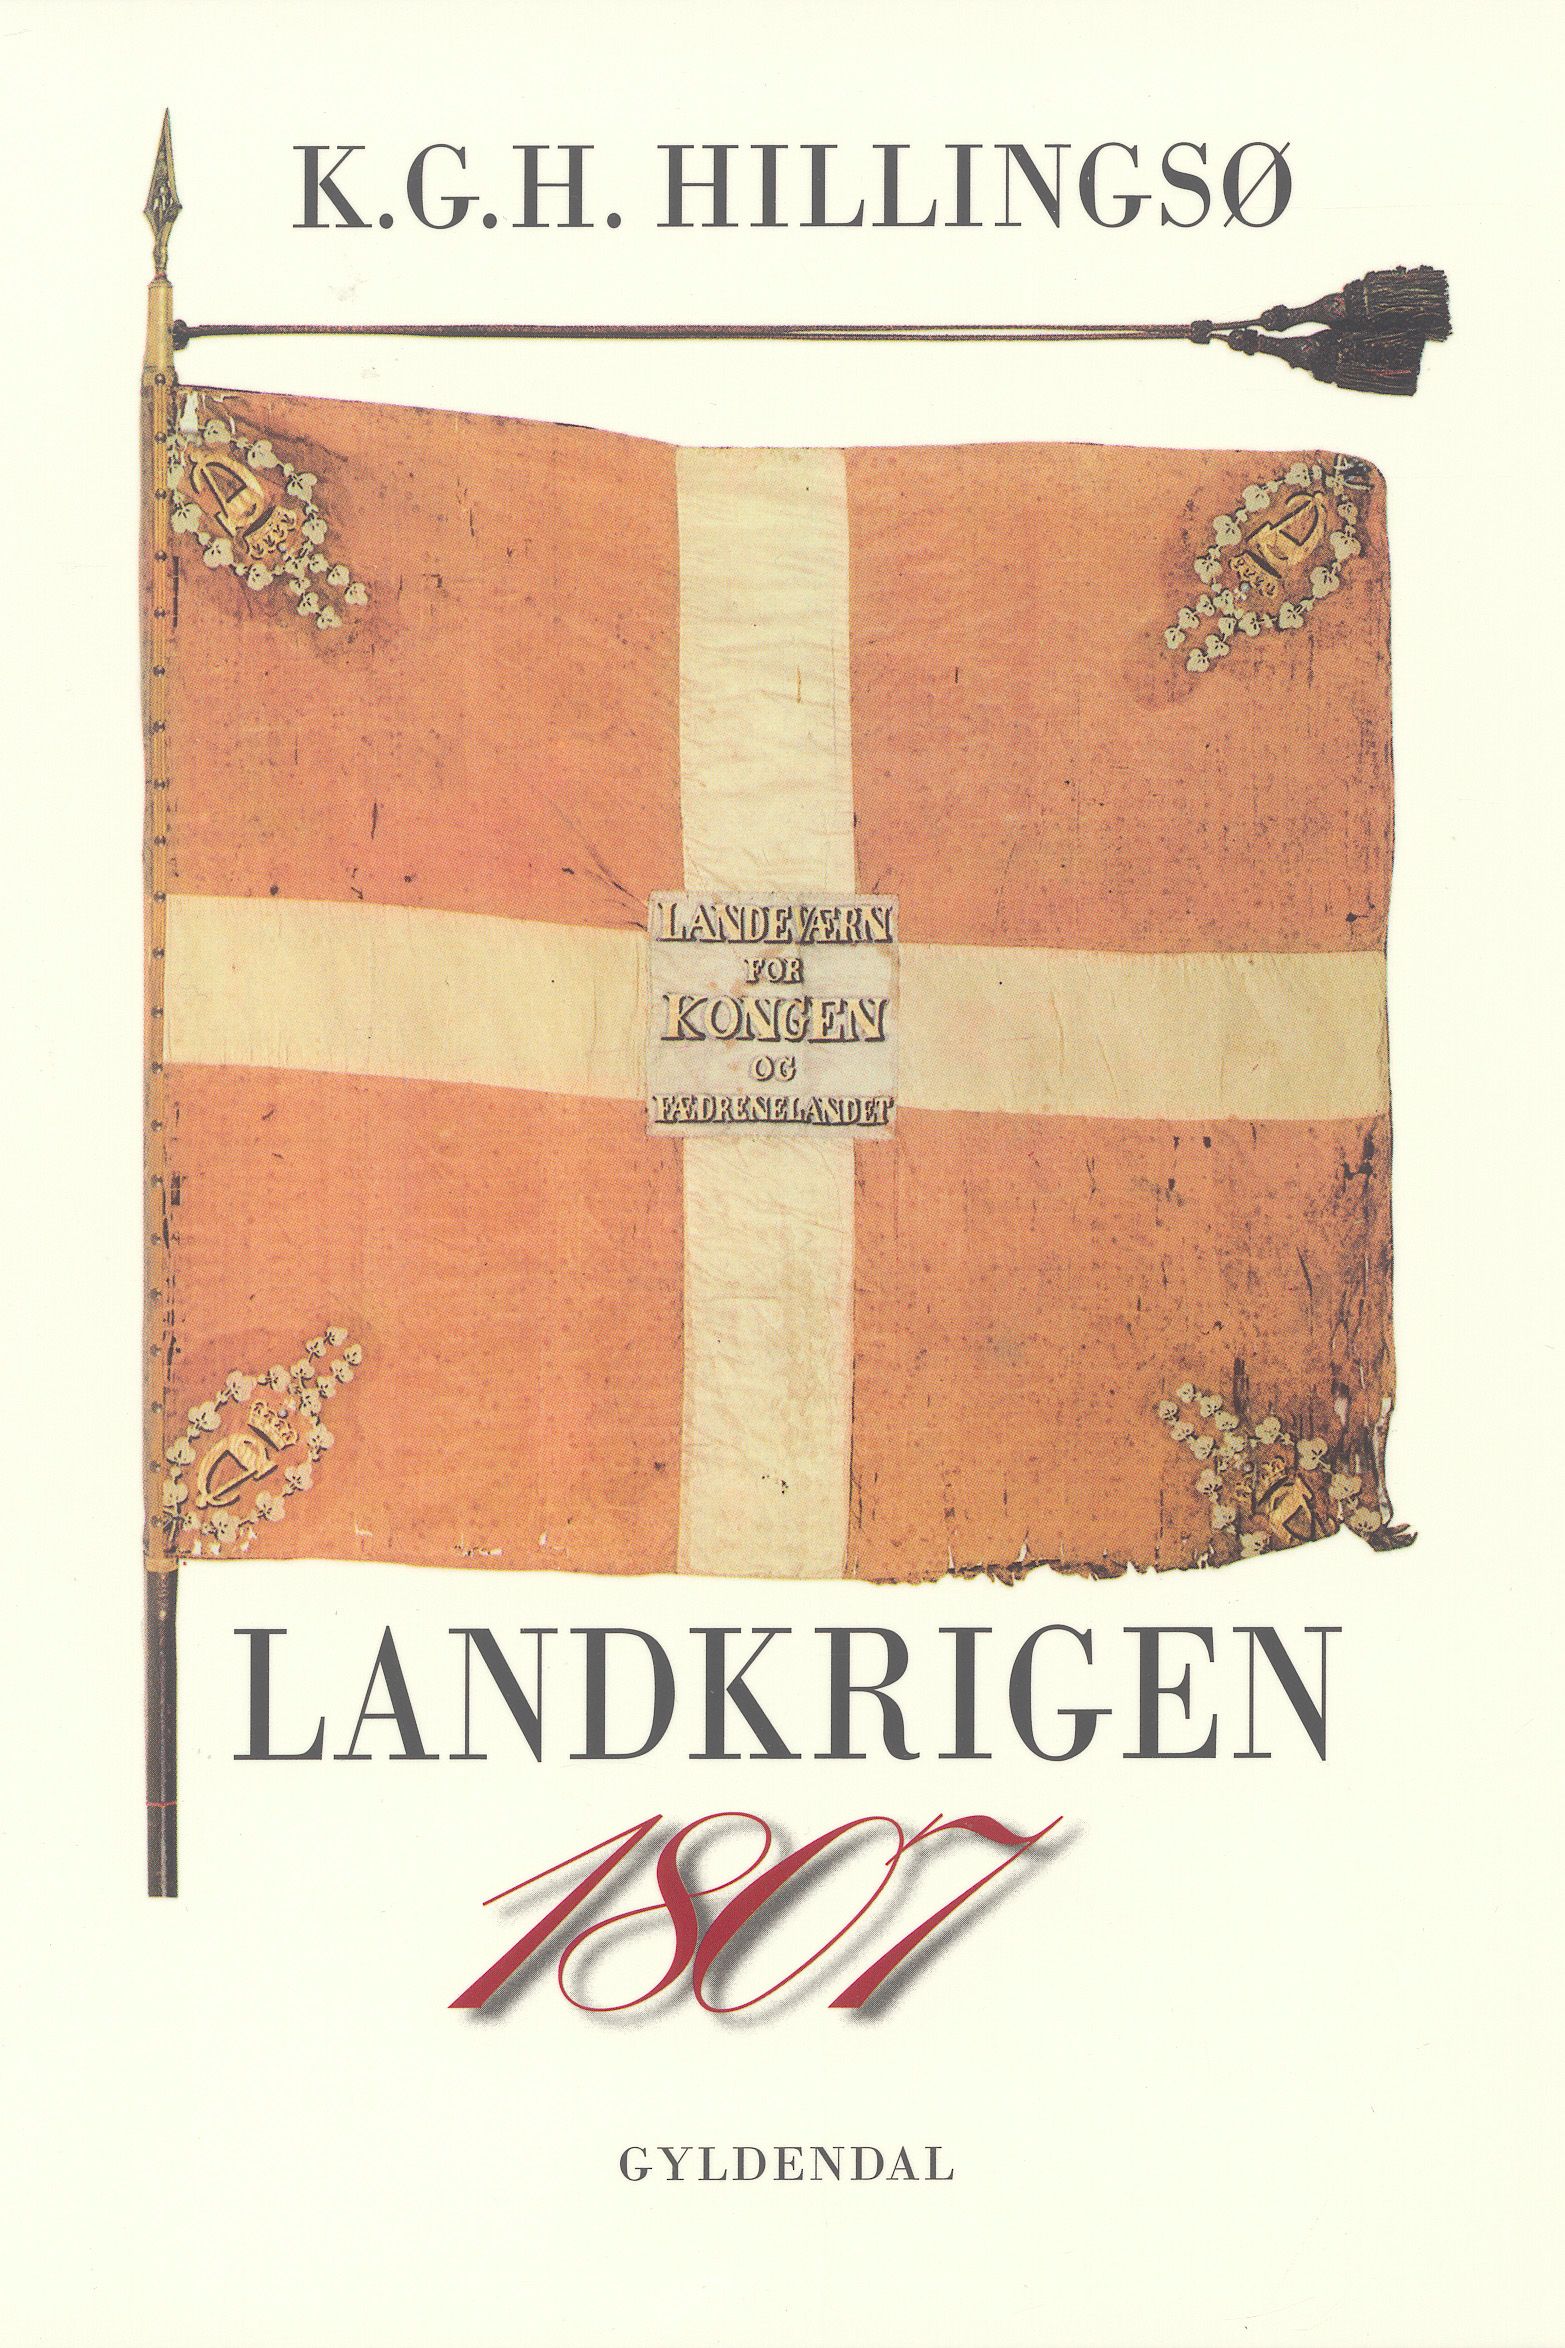 1807 Landkrigen, e-bog af Kjeld Hillingsø